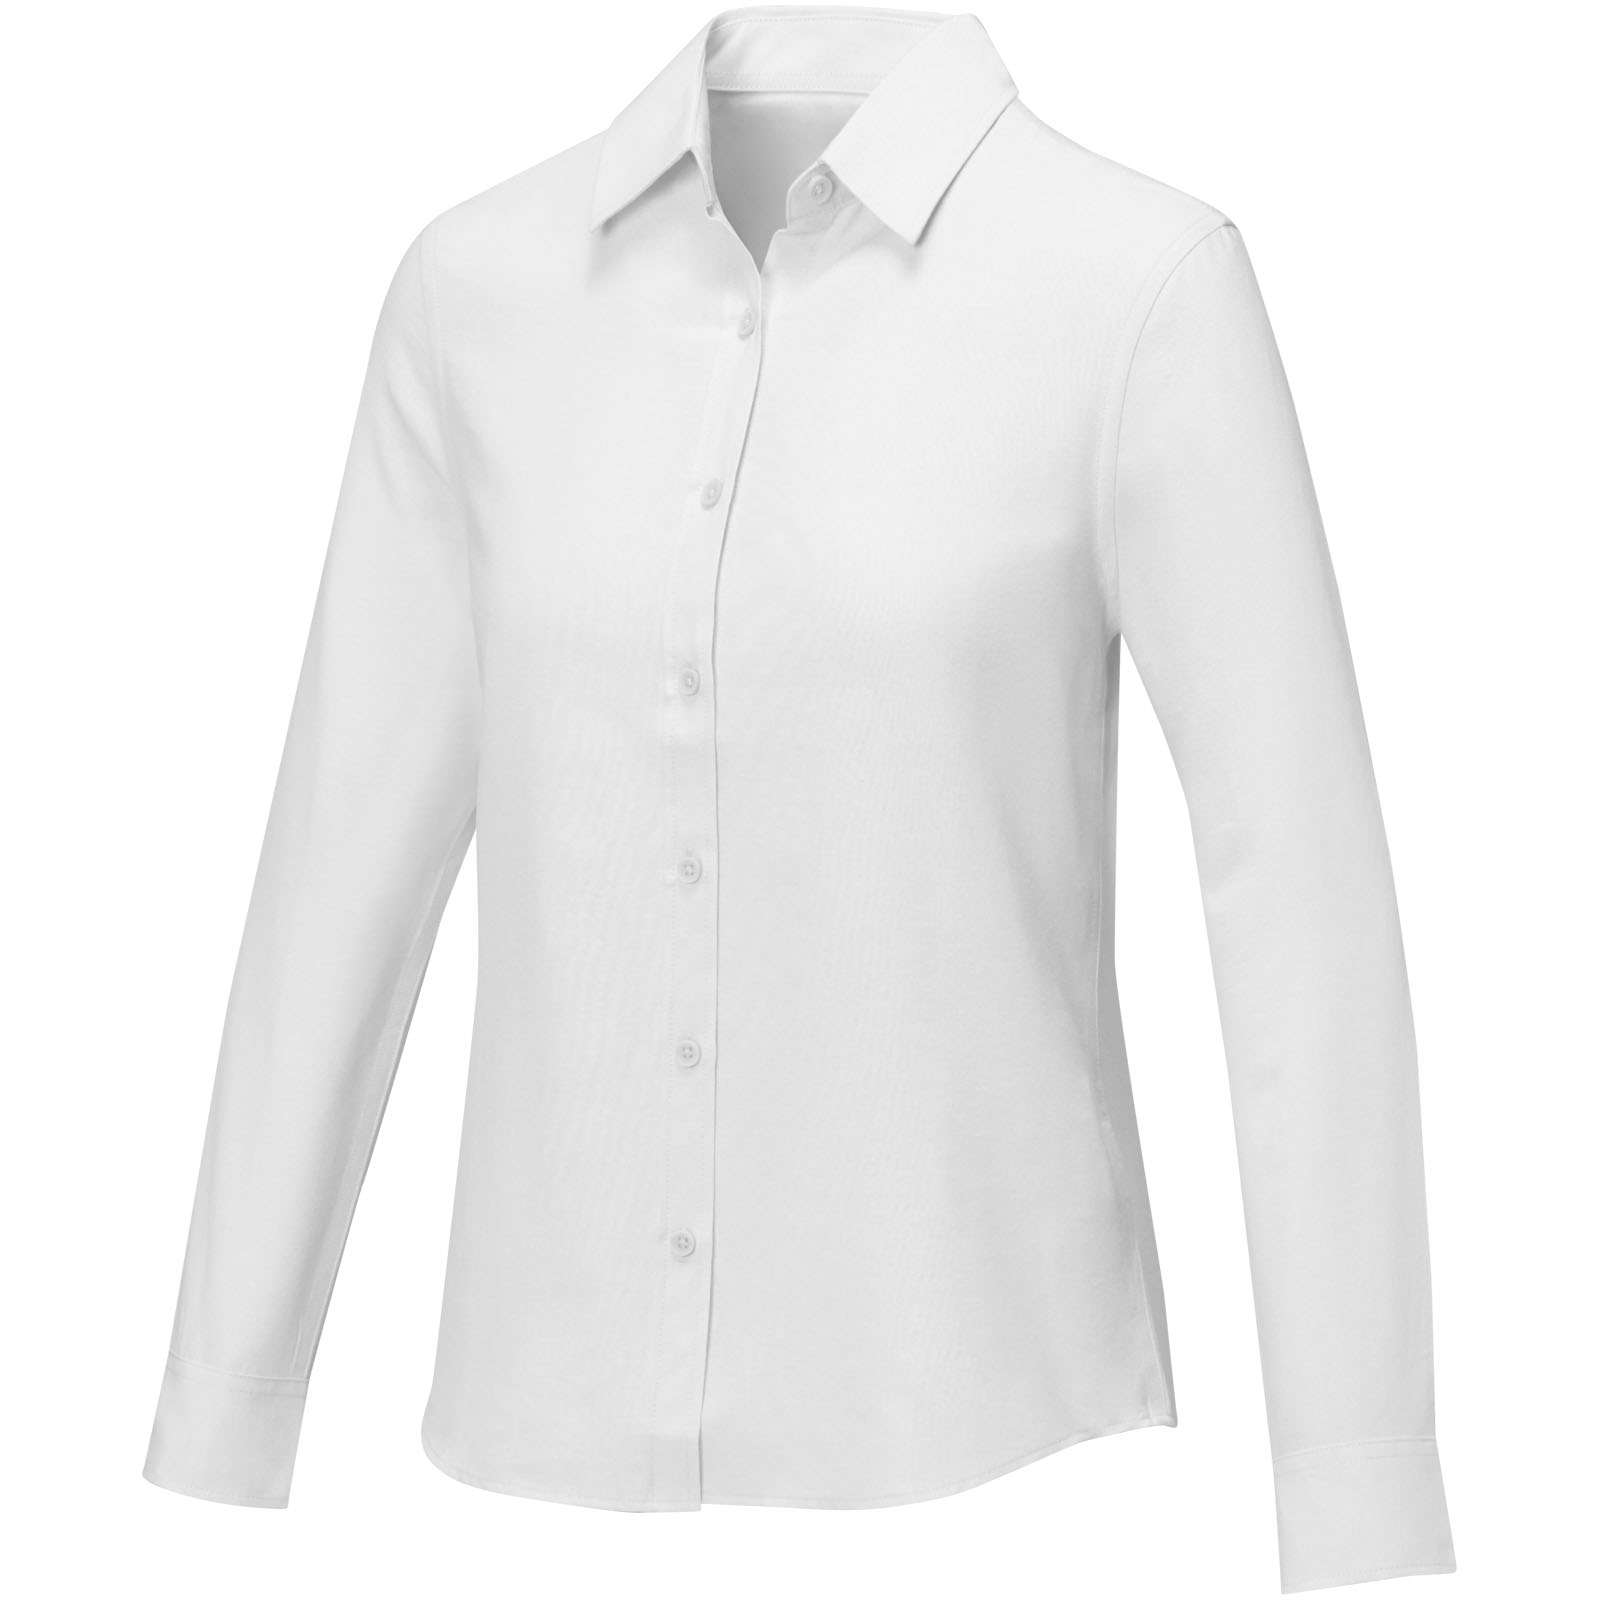 imagen-uniformidad-camisa-blanco